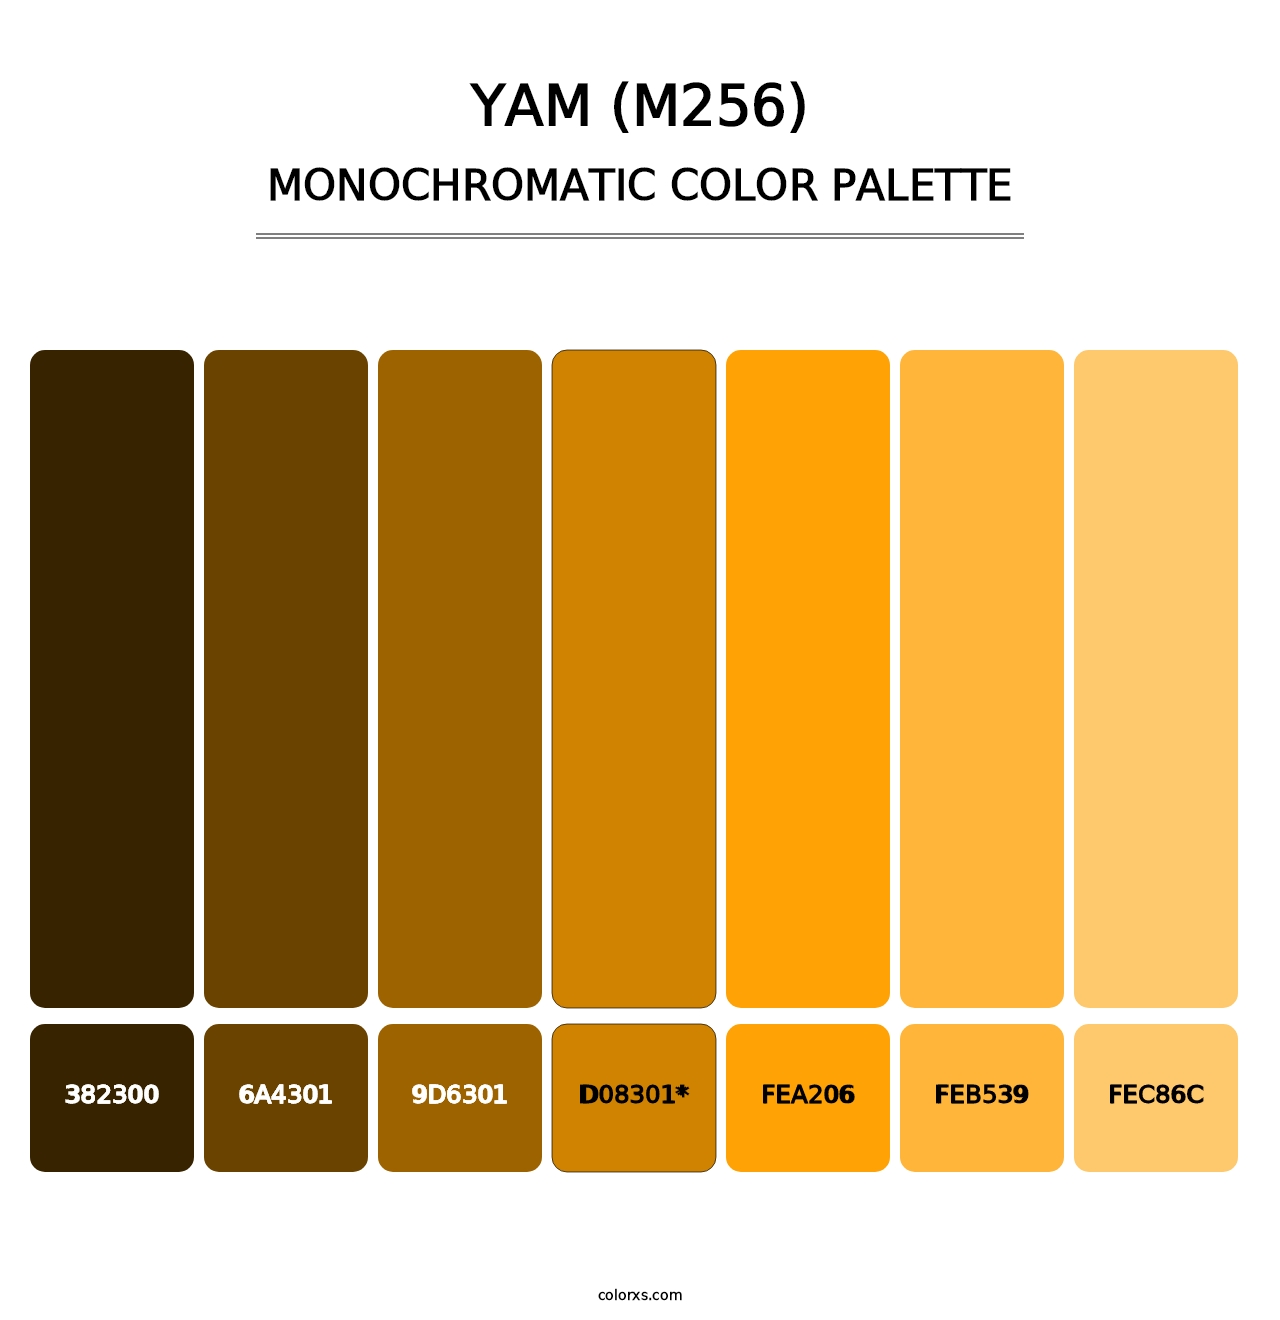 Yam (M256) - Monochromatic Color Palette